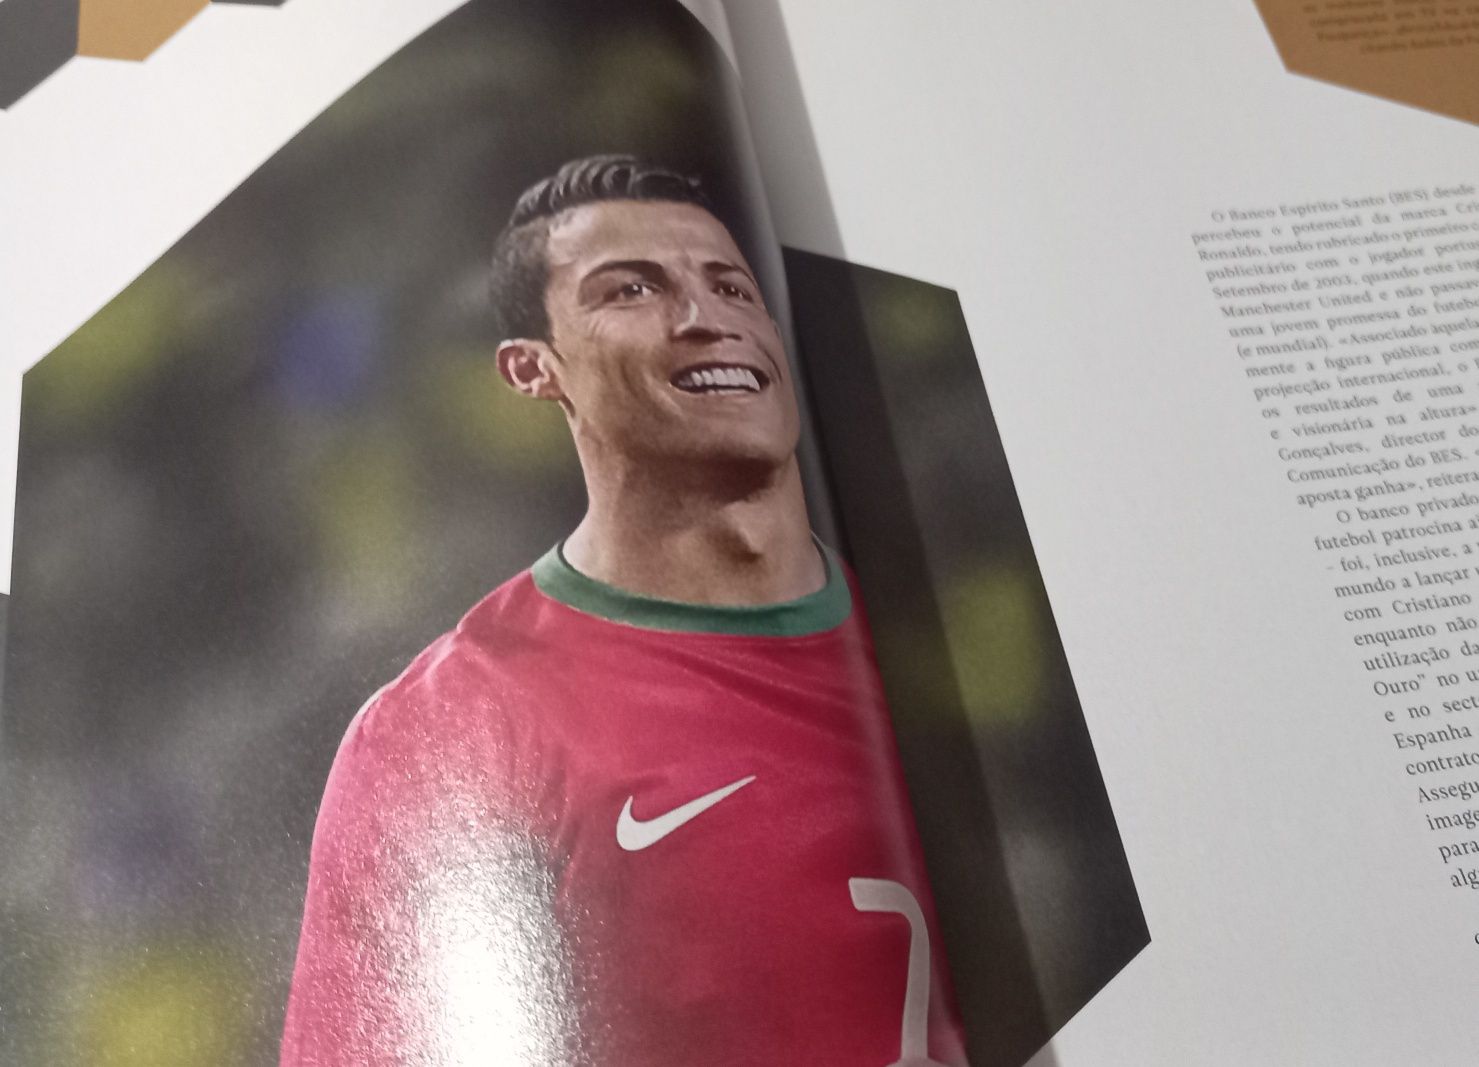 Cristiano Ronaldo 2014 a marca em capa, revista e conteúdos